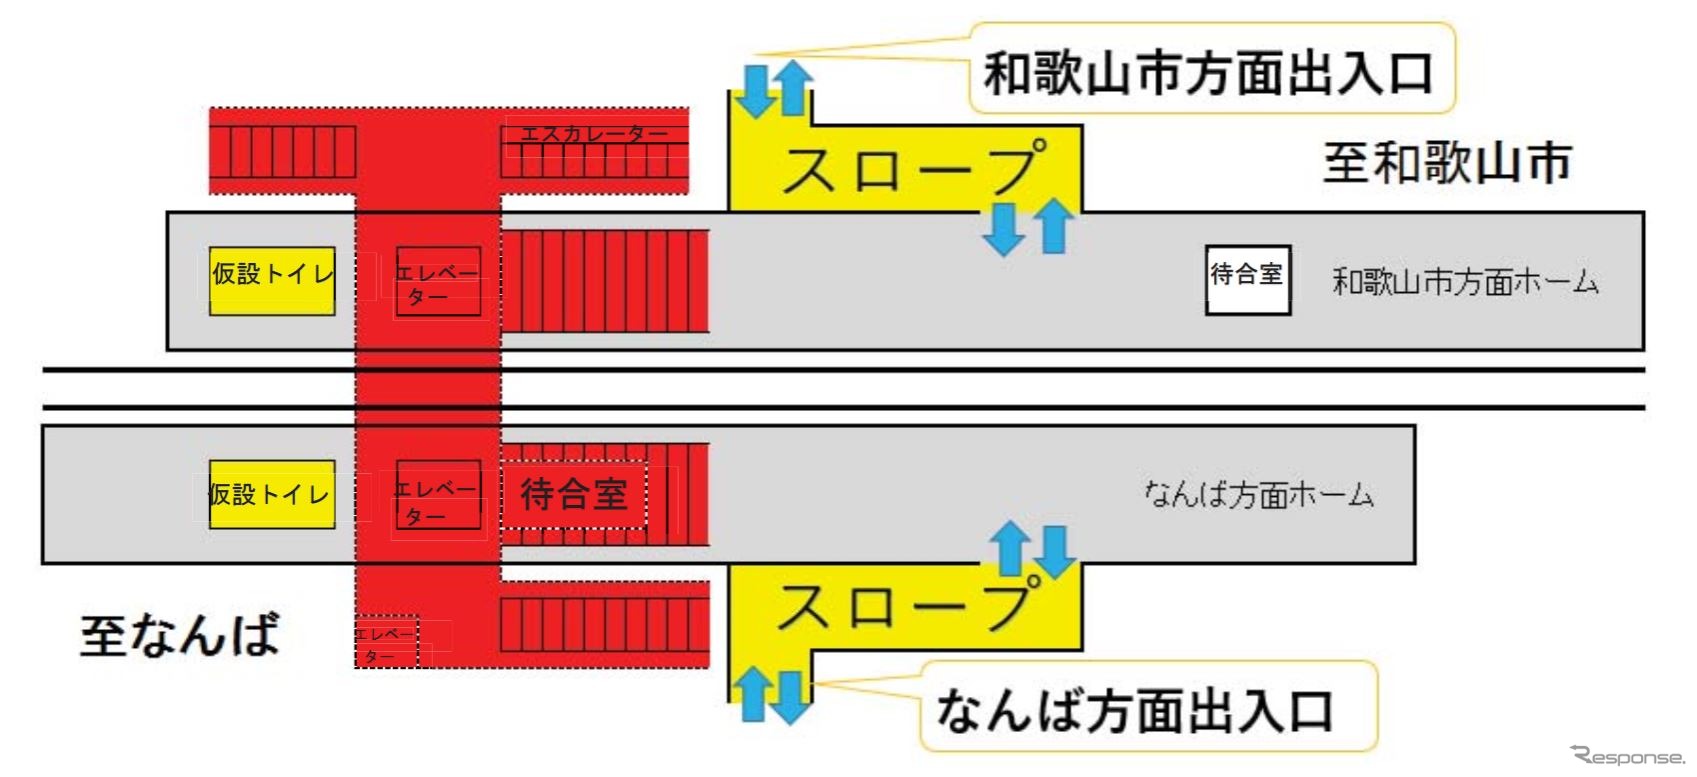 9月11日から営業を再開する南海本線尾崎駅。赤い部分の階段、エスカレーター、エレベーター、跨線橋は使用できないため、両方向ともスロープによる乗降となる。各ホームには男女別の仮設トイレがひとつずつ設置されるが、駅構内で各ホーム間を移動できないため、駅北側または南側の踏切を渡る必要がある。